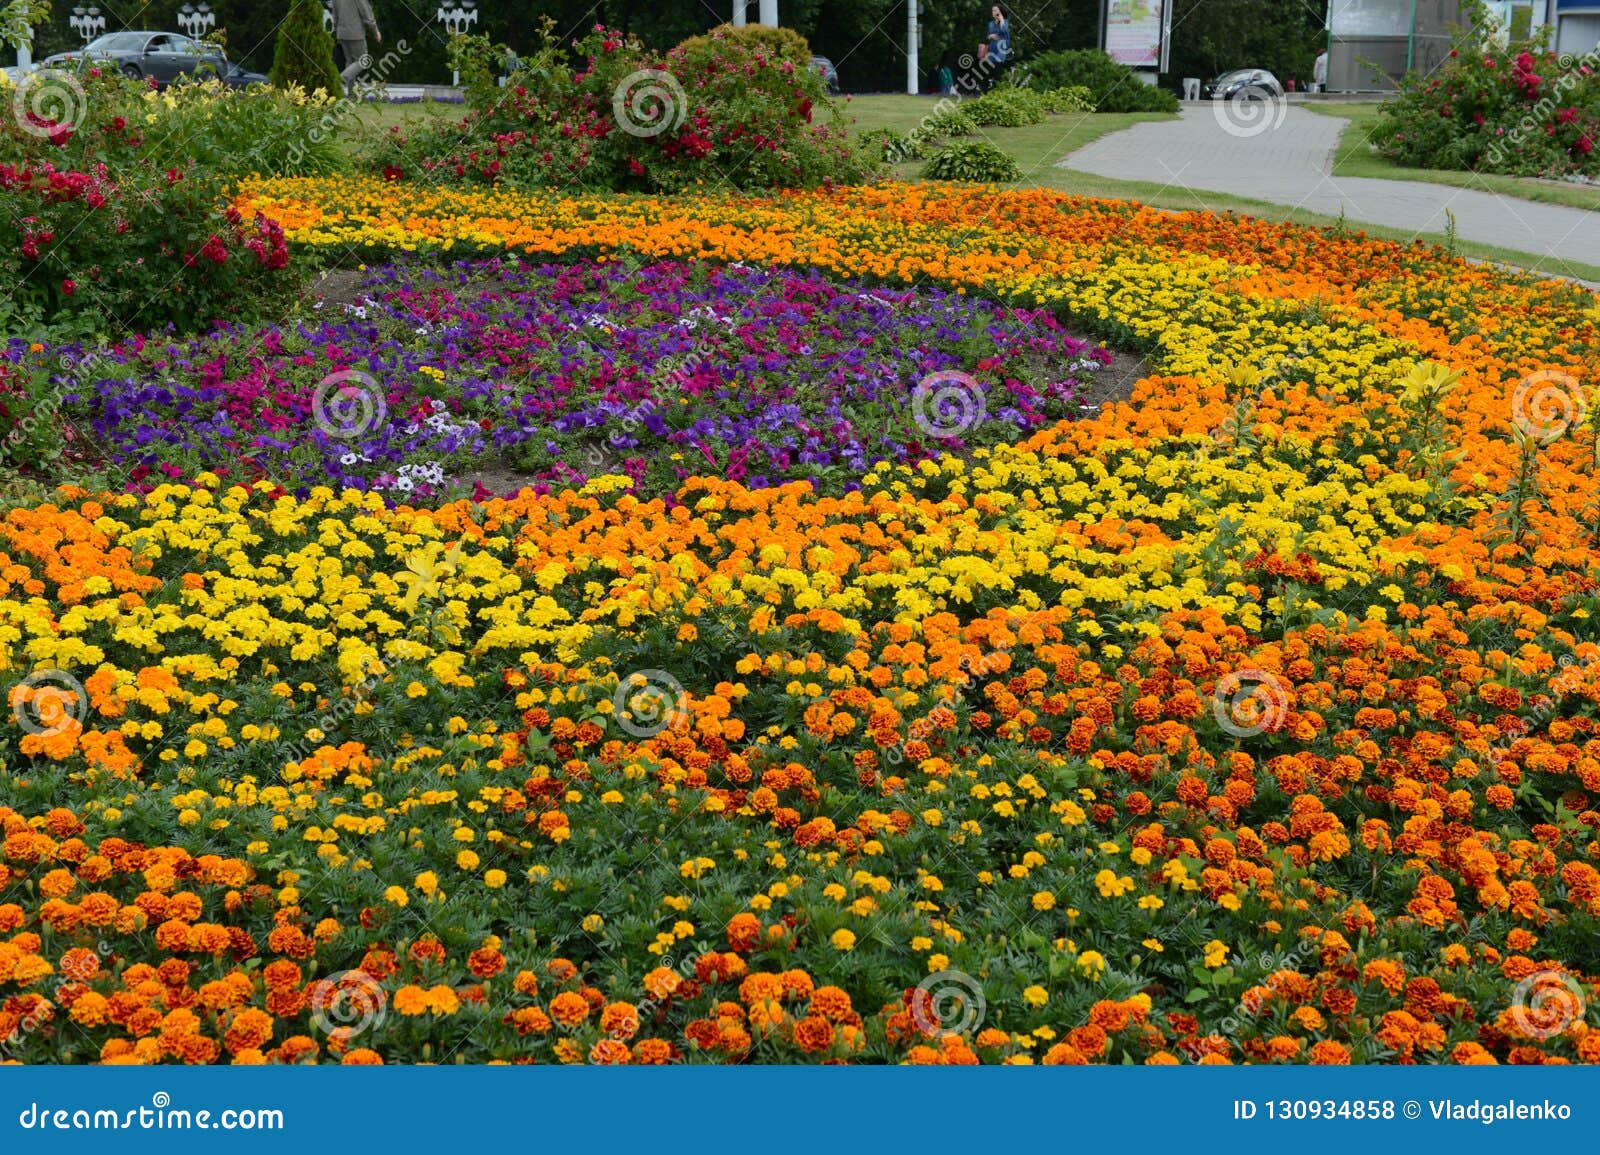 city flower garden with bright summer flowers on vitebsk street